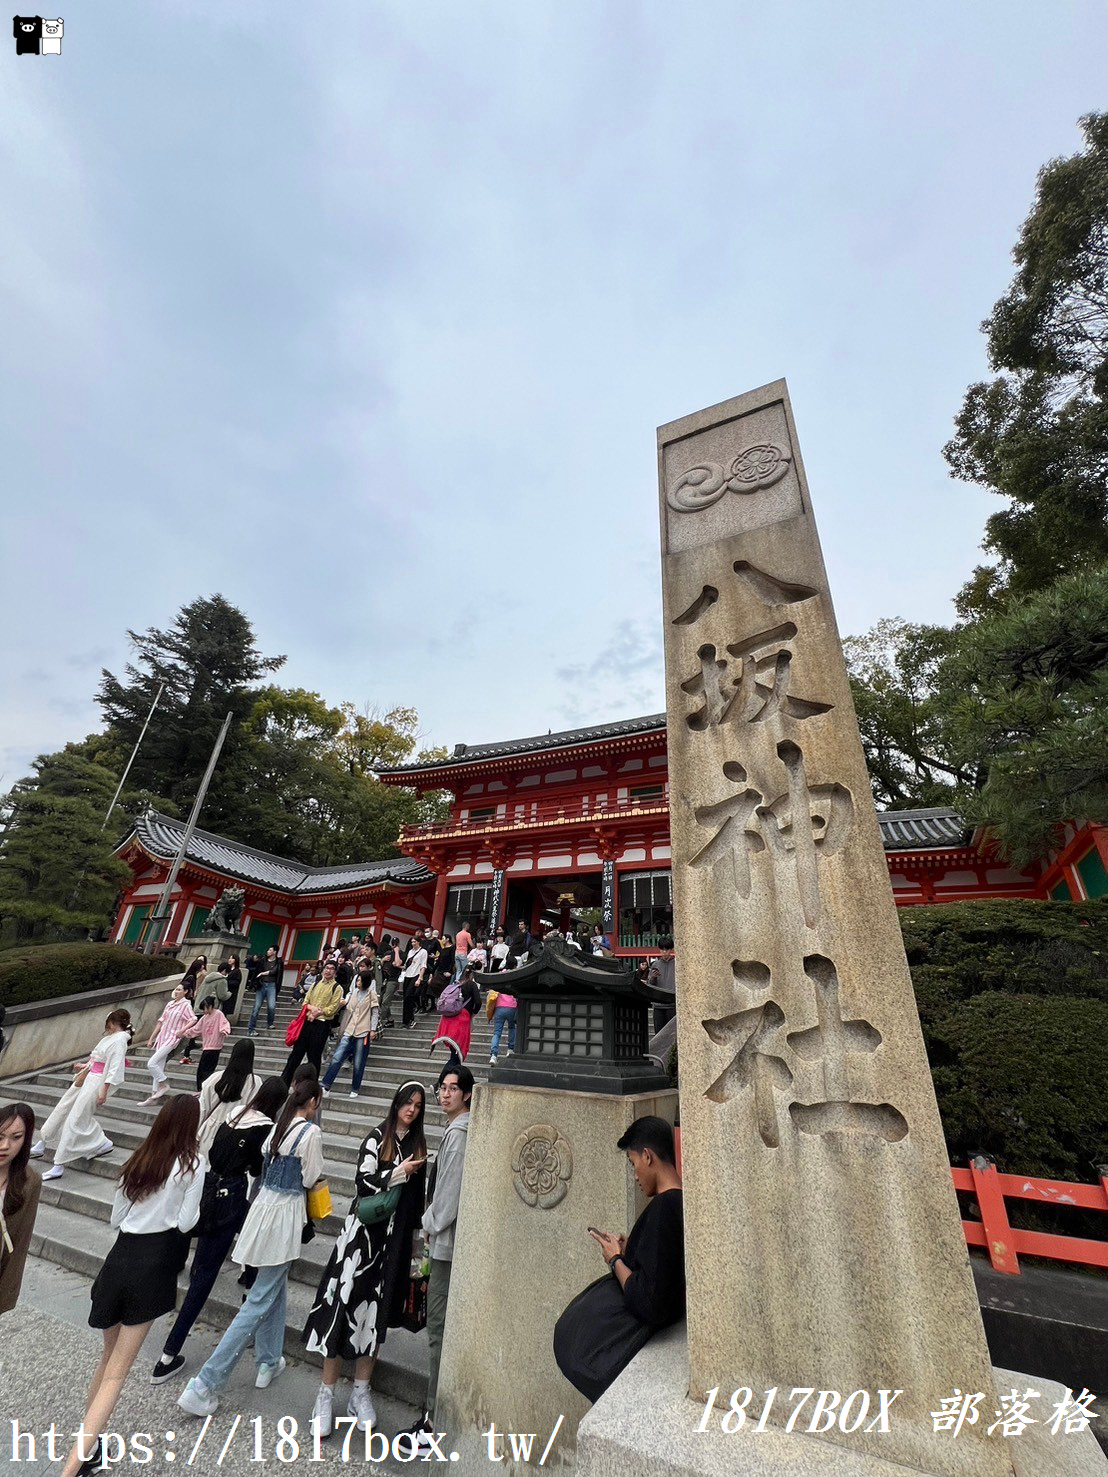 【京都景點】日本三大祭「祇園祭」發祥地。京都八坂神社